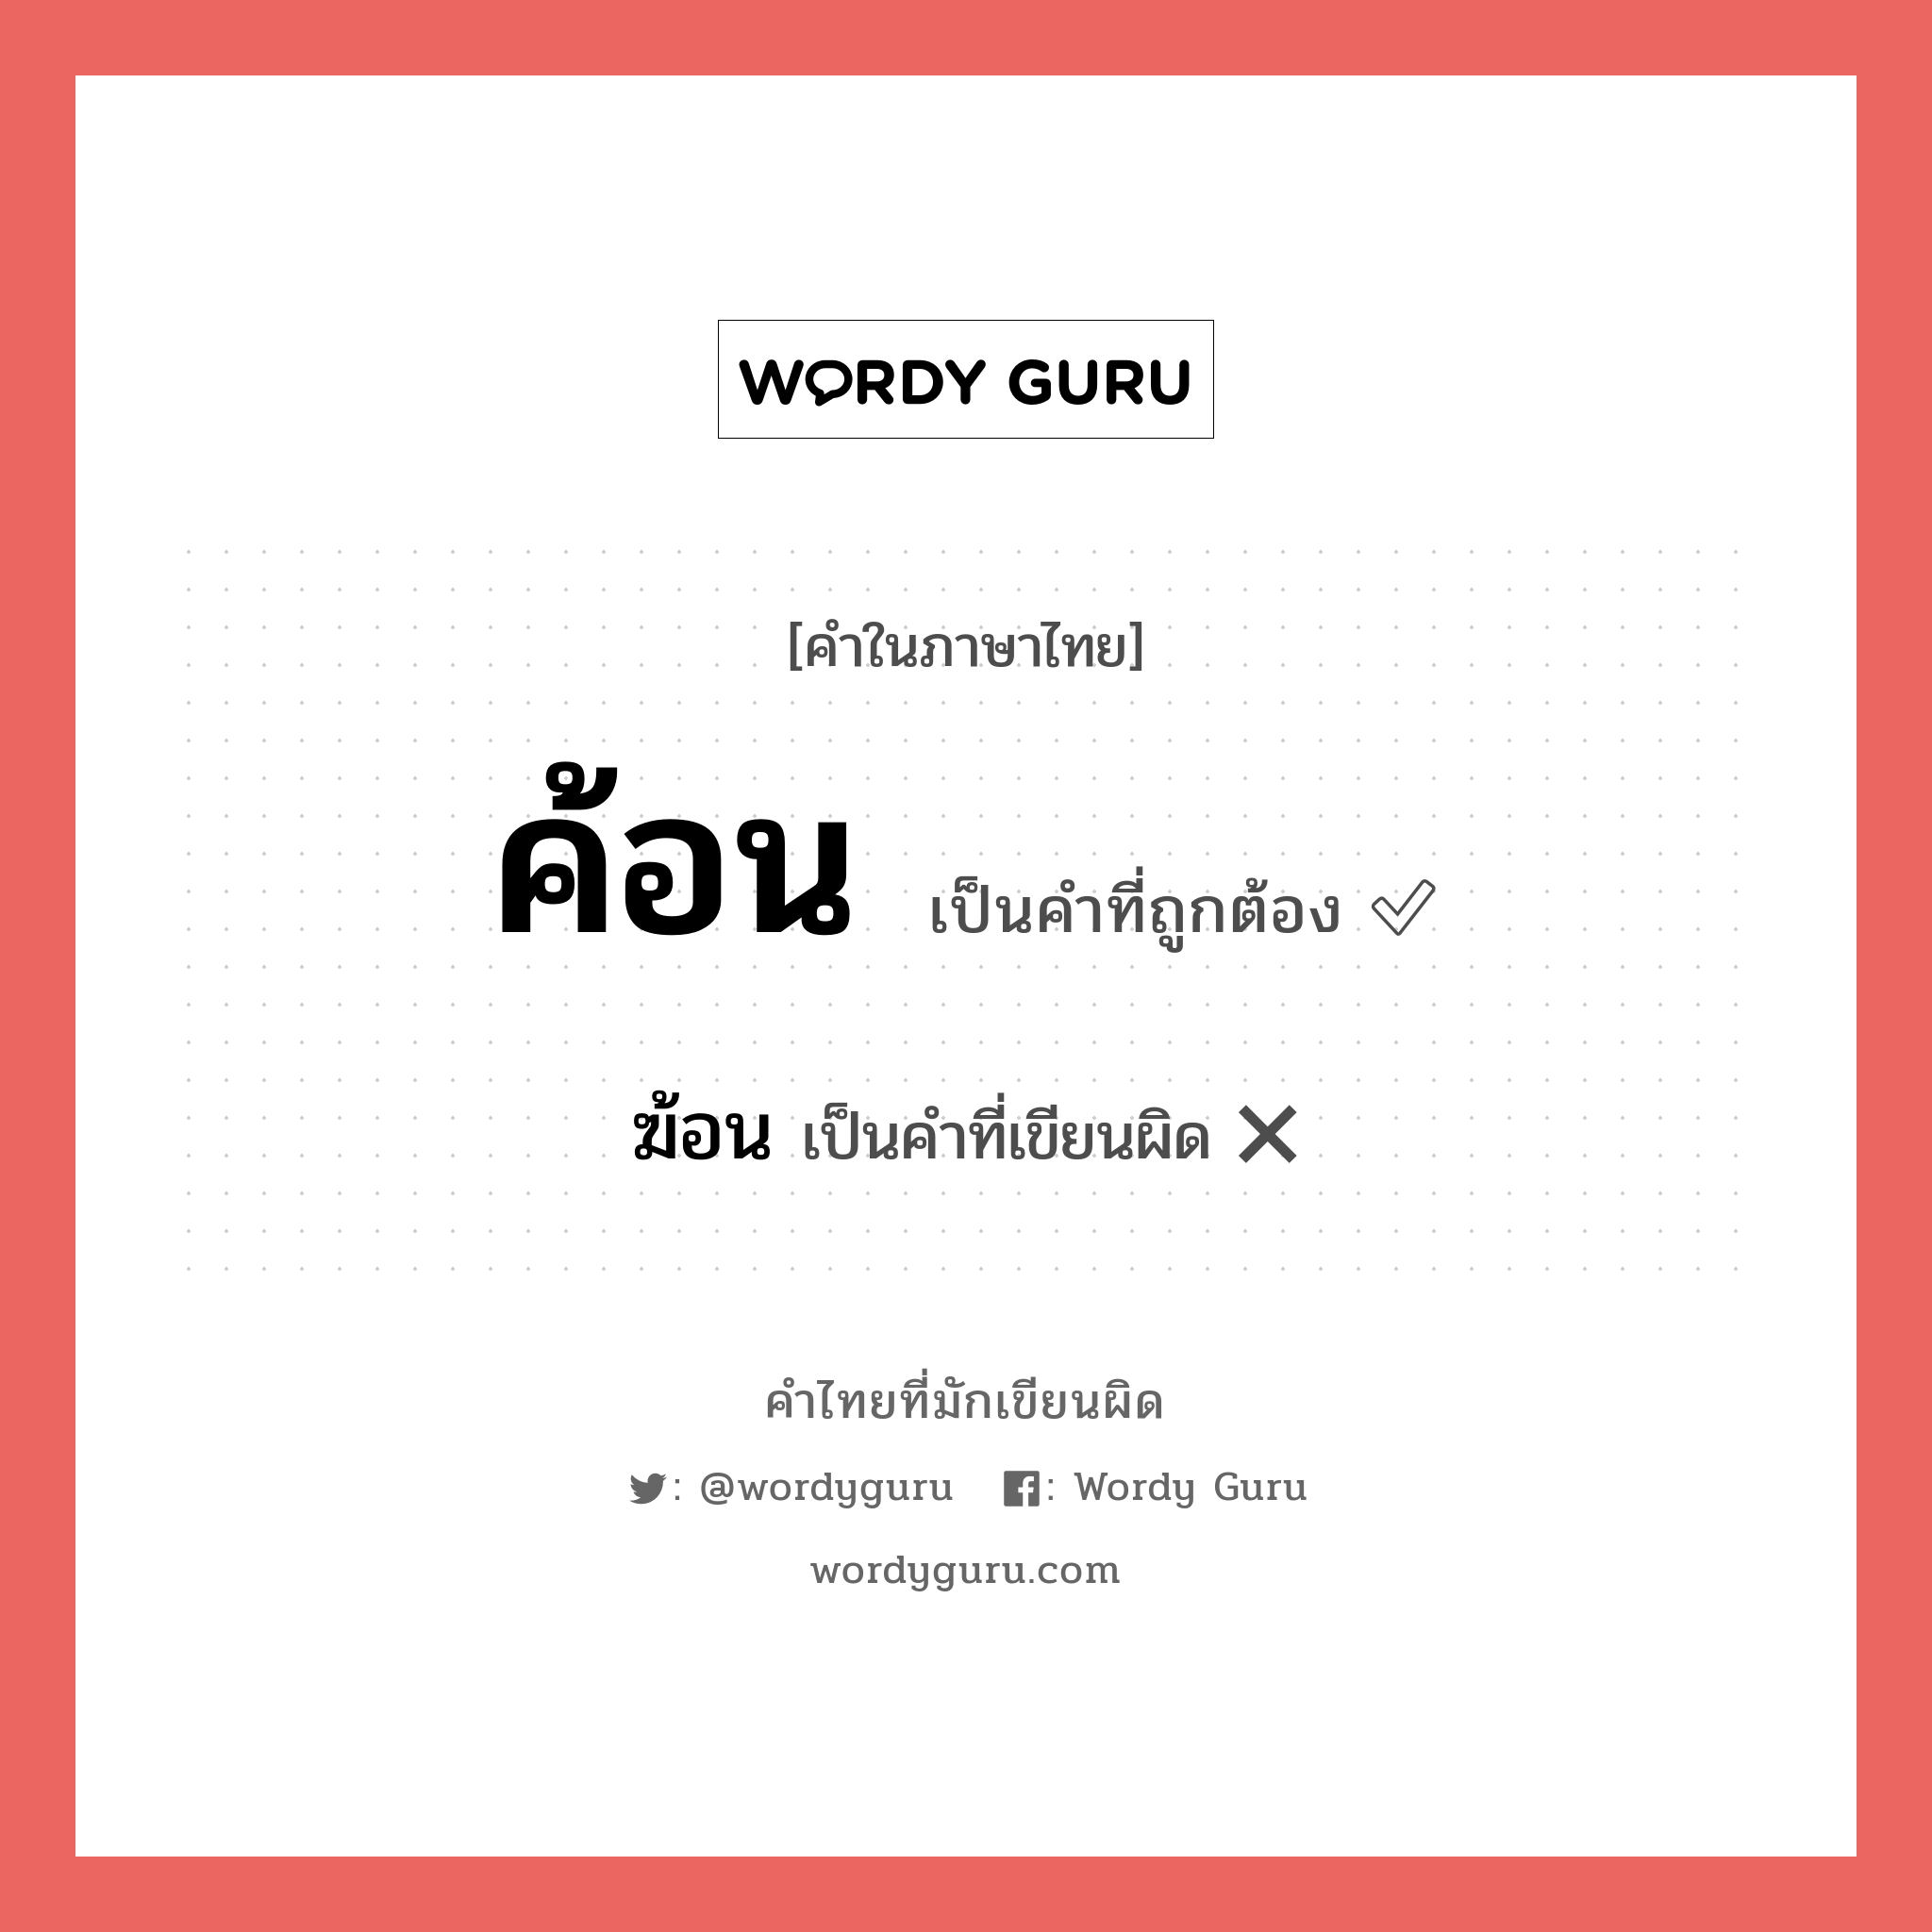 ฆ้อน หรือ ค้อน คำไหนเขียนถูก?, คำในภาษาไทยที่มักเขียนผิด ฆ้อน คำที่ผิด ❌ ค้อน